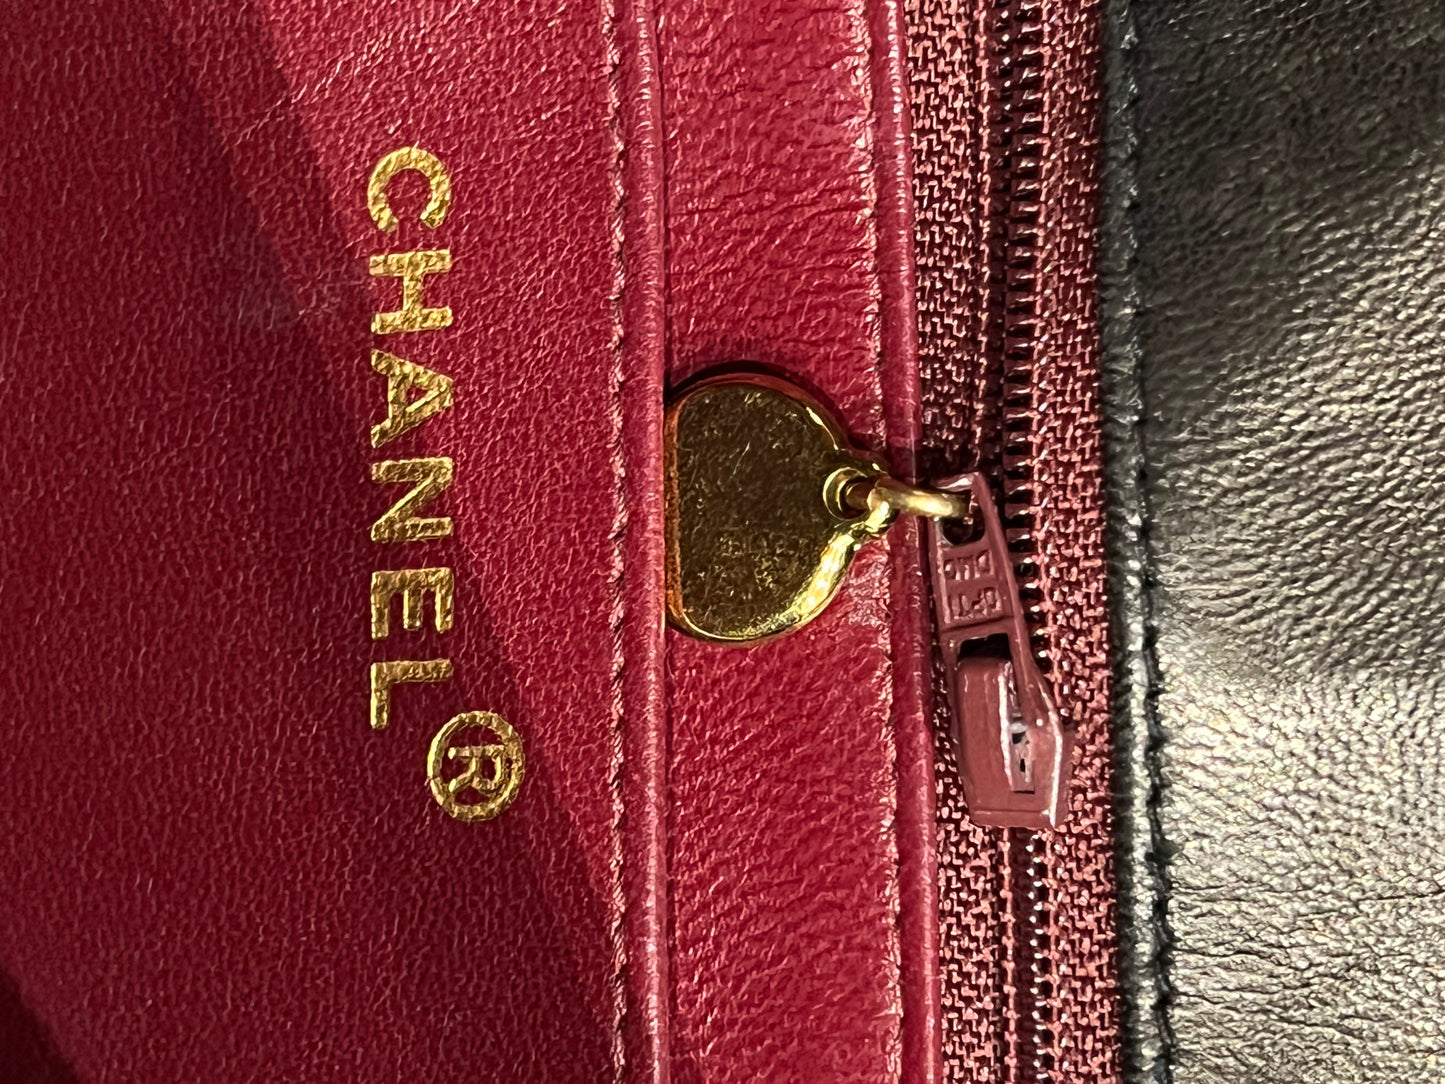 Chanel Diana vintage bag